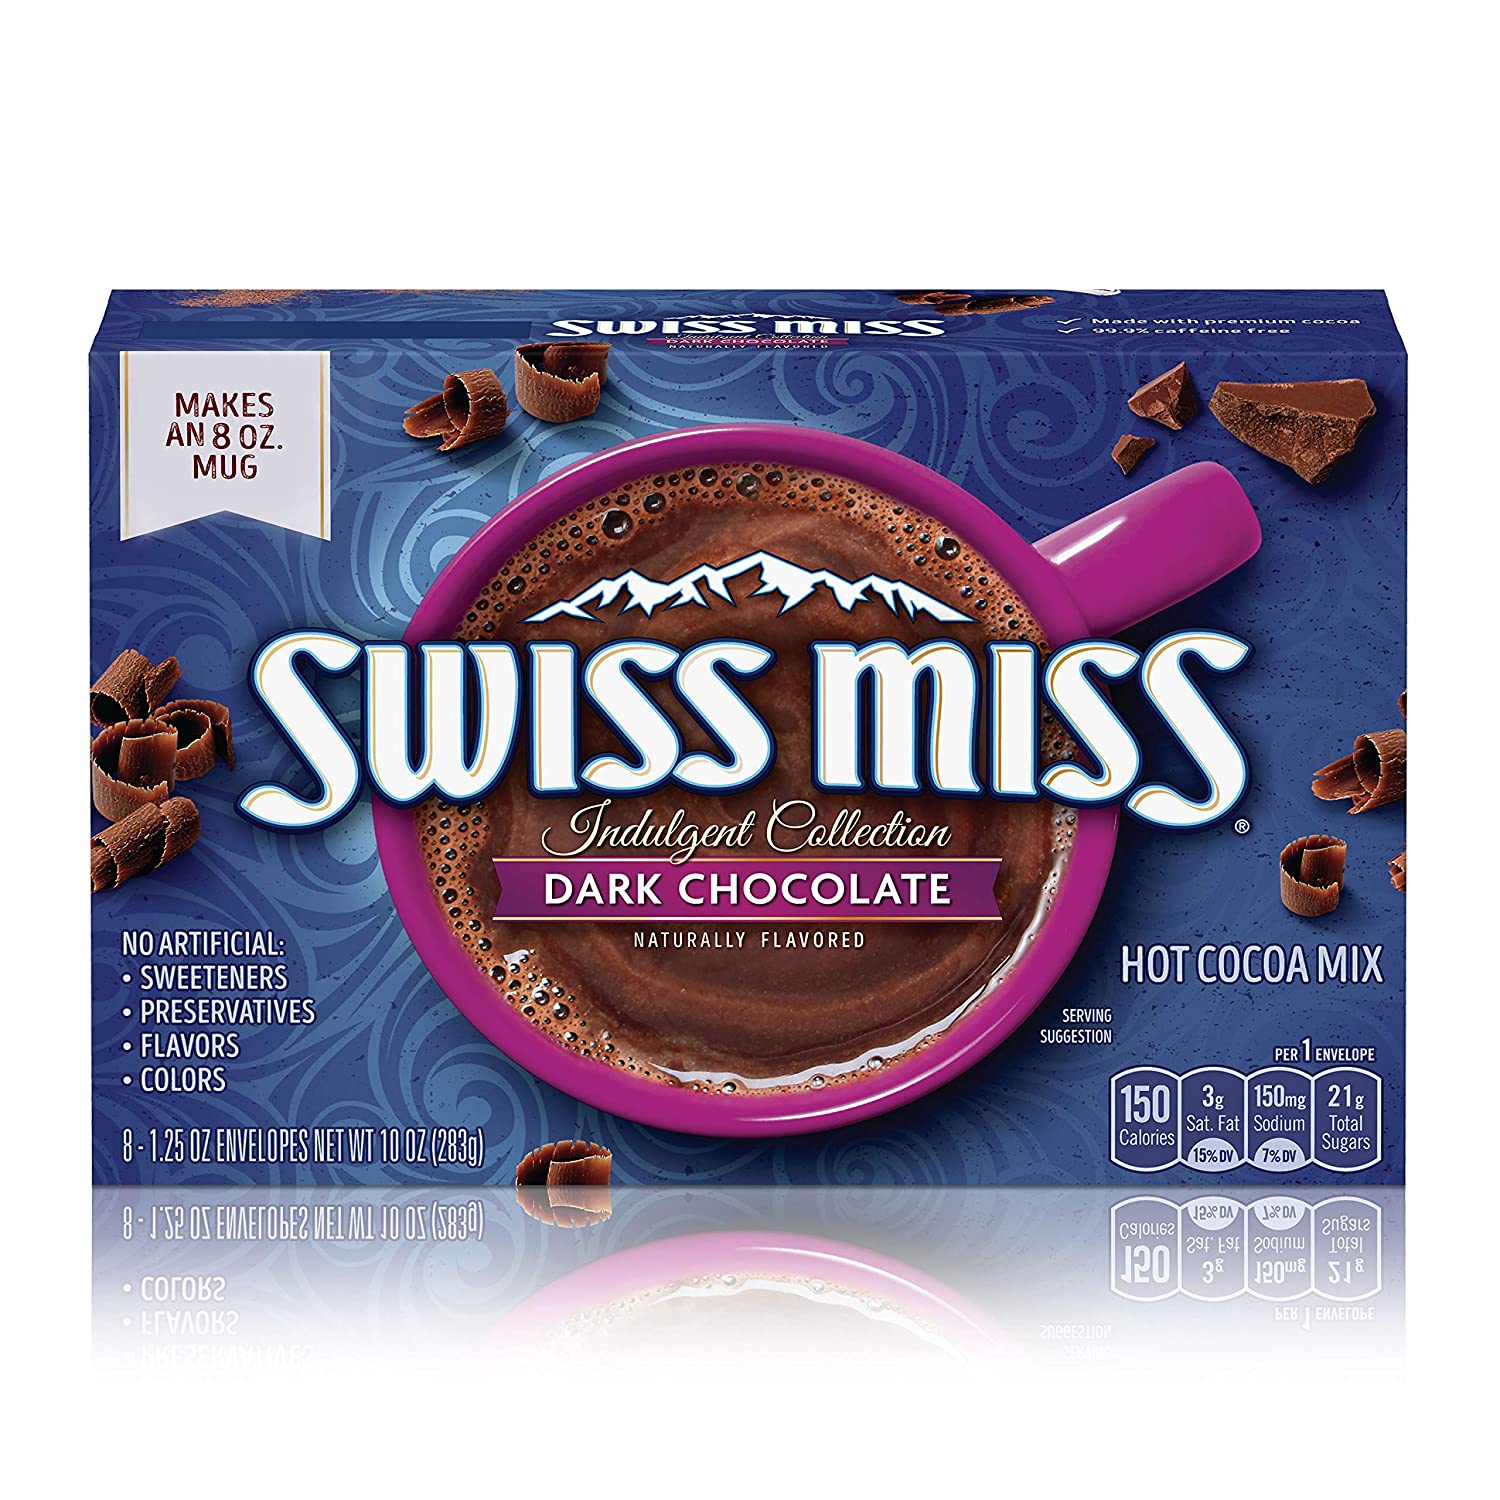 Swiss Miss Dark Chocolate Image